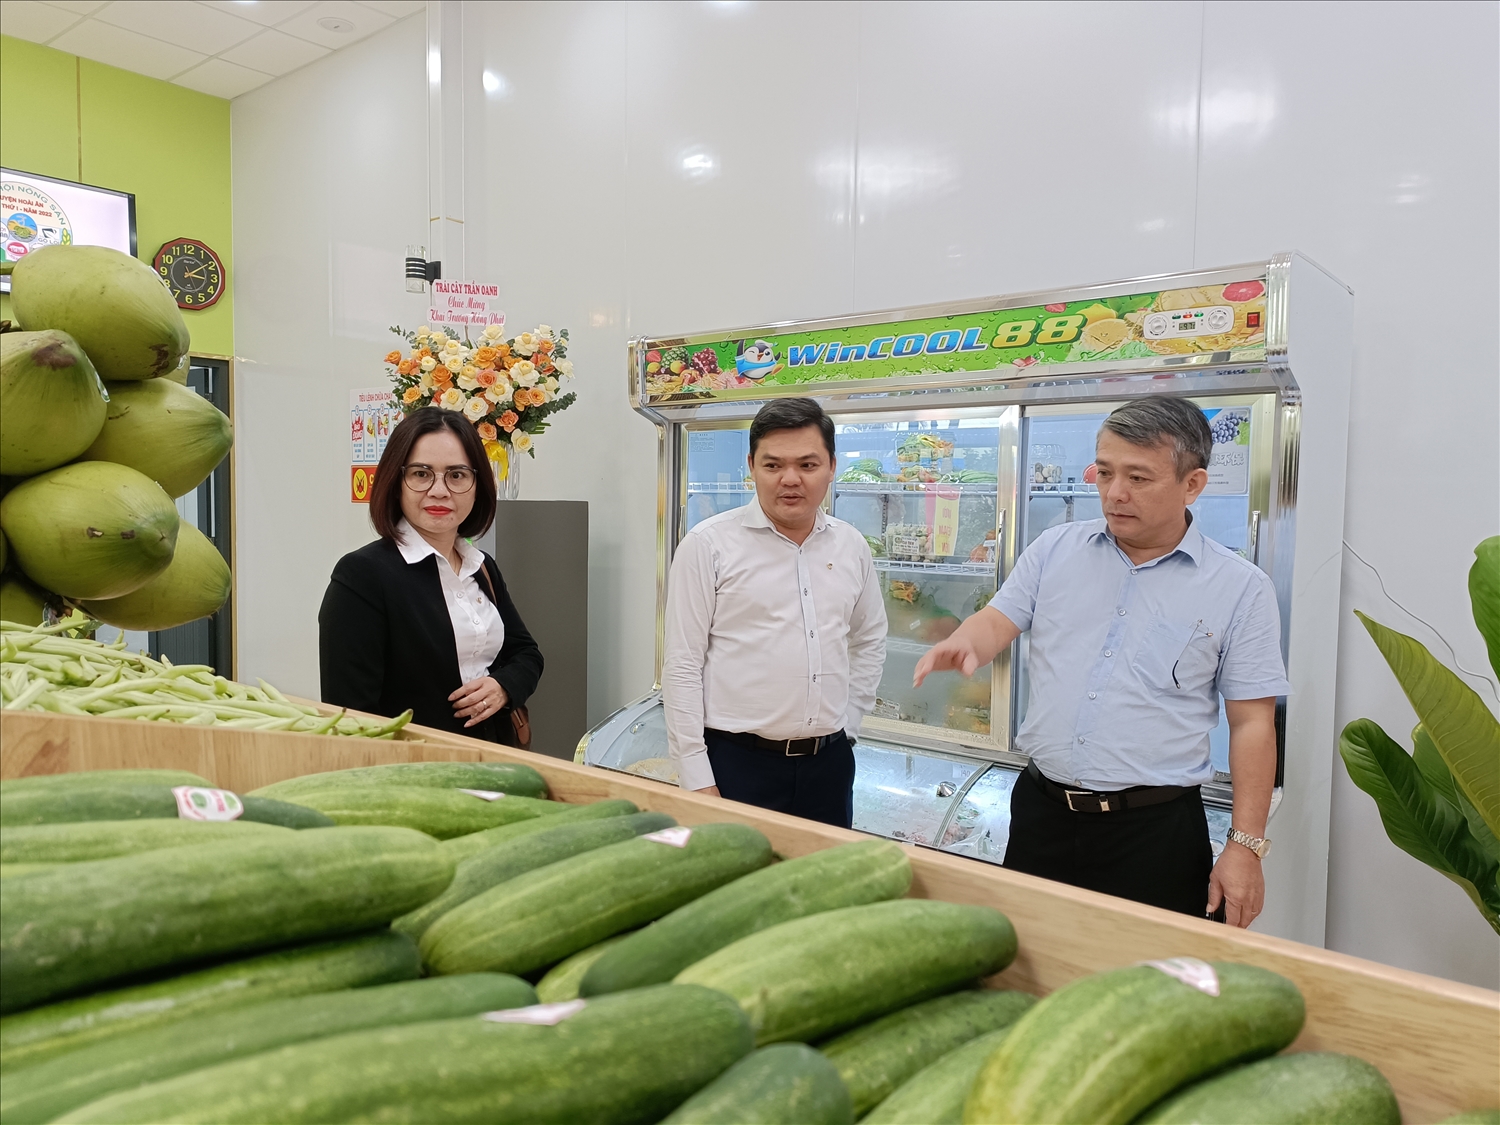 Ông Nguyễn Hữu Khúc (ngoài cùng, bên phải), Chủ tịch UBND huyện Hoài Ân giới thiệu về Trung tâm trưng bày, giới thiệu sản phẩm nông nghiệp chủ lực